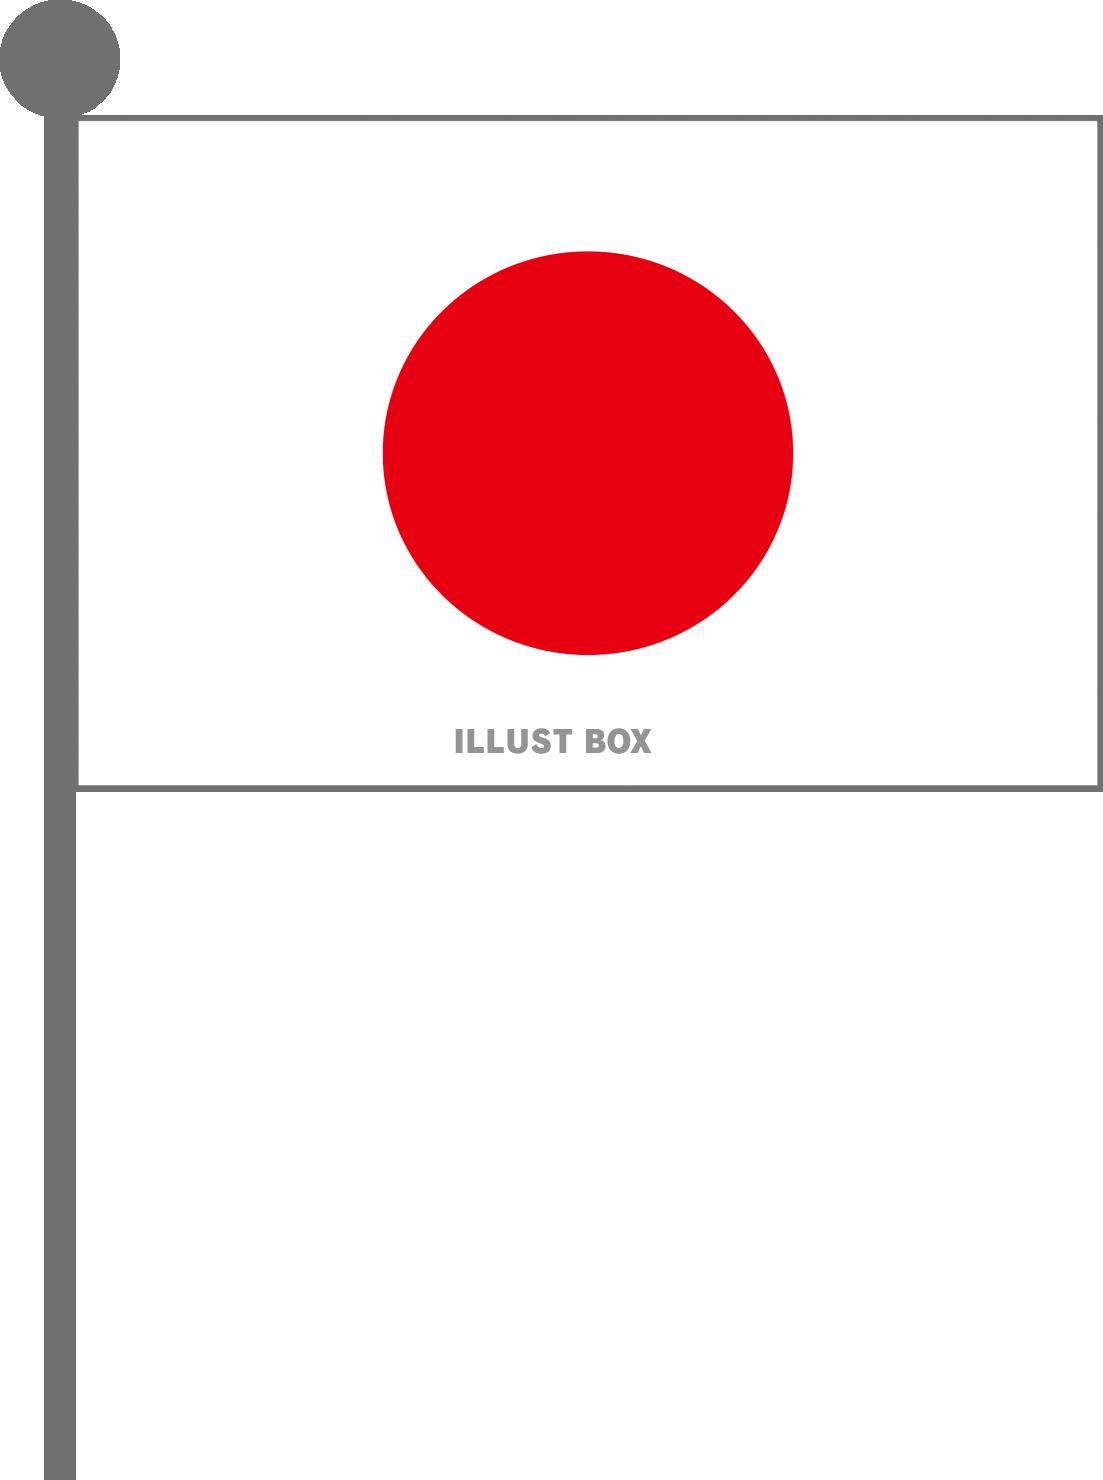 14周年記念イベントが 日本の国旗